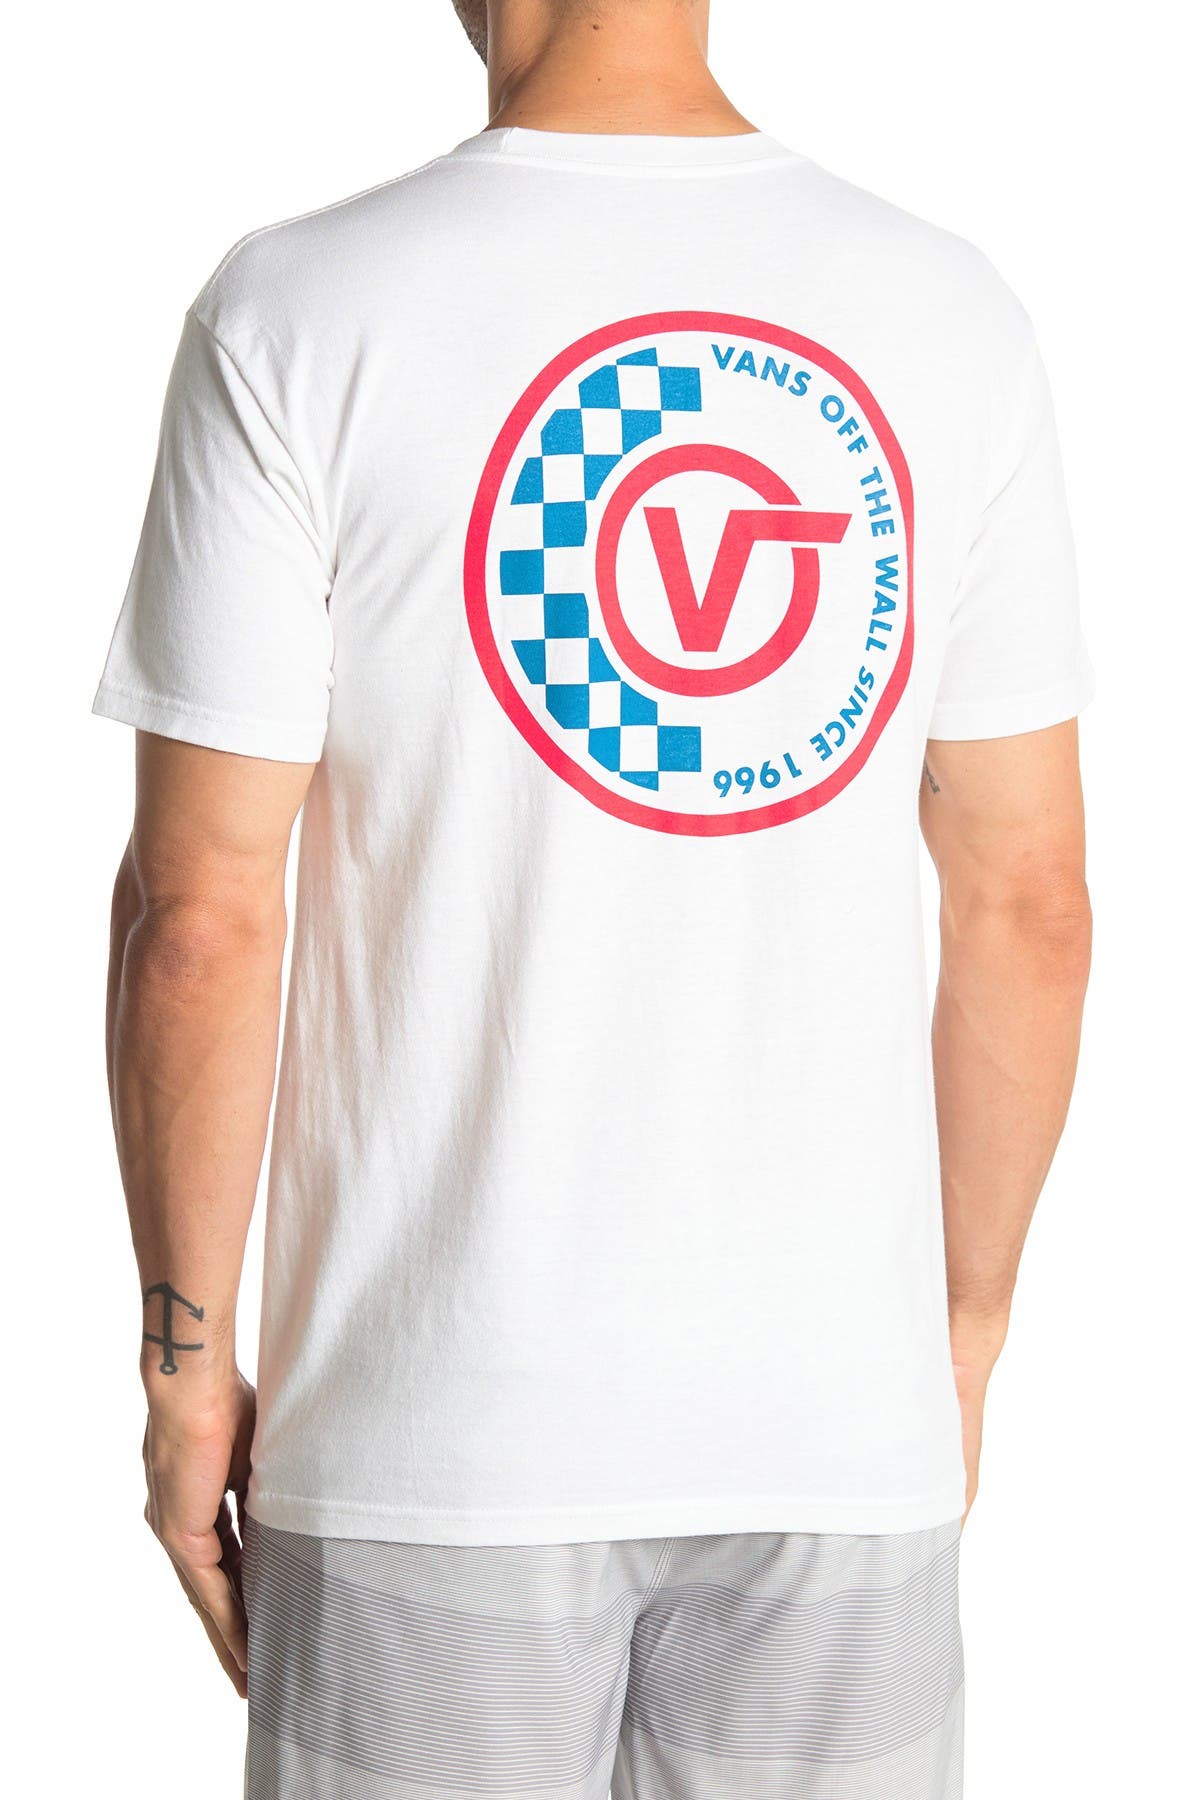 checkered vans t shirt